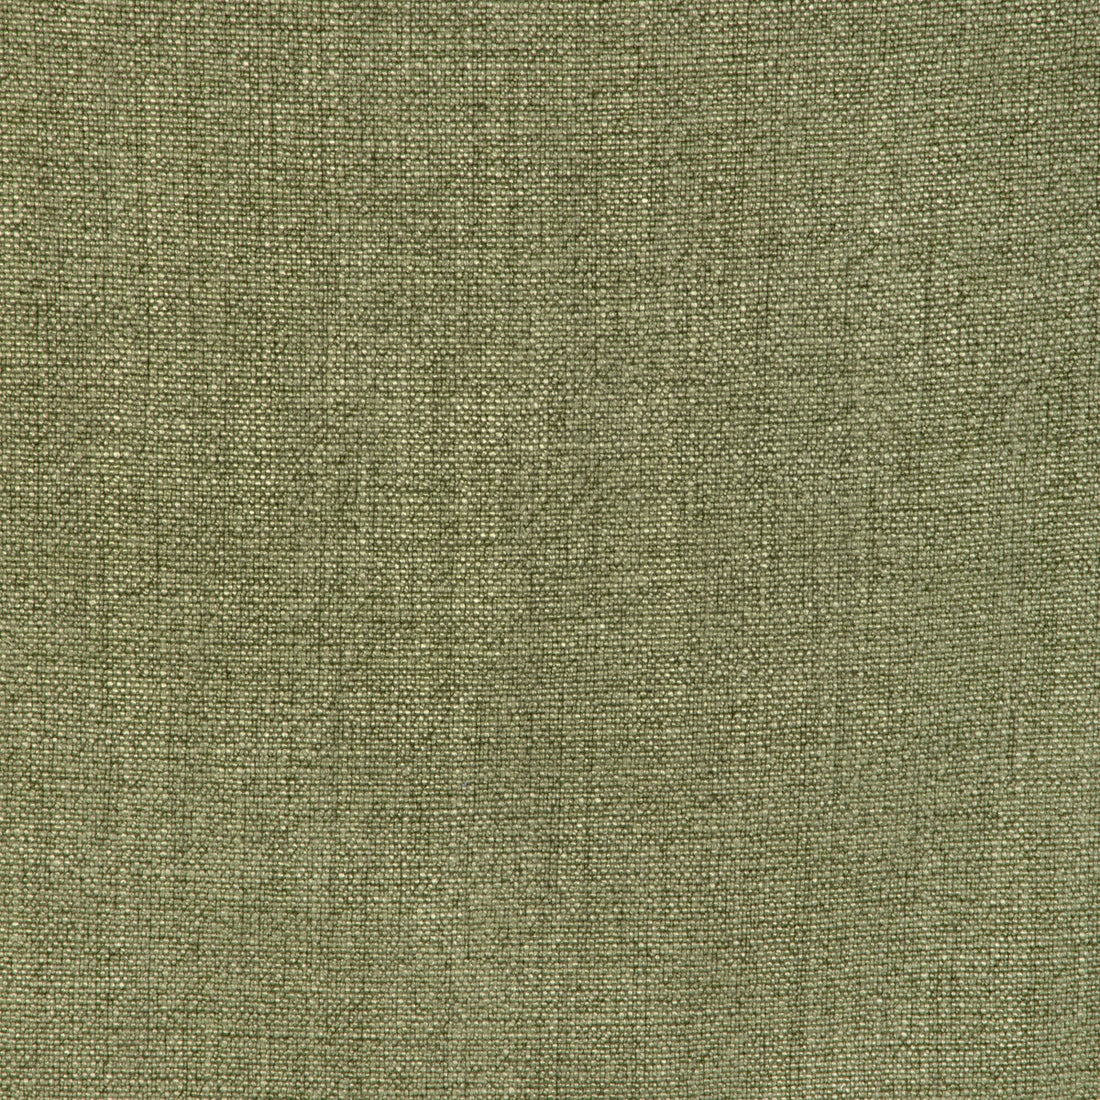 Kravet Basics fabric in 35189-23 color - pattern 35189.23.0 - by Kravet Basics